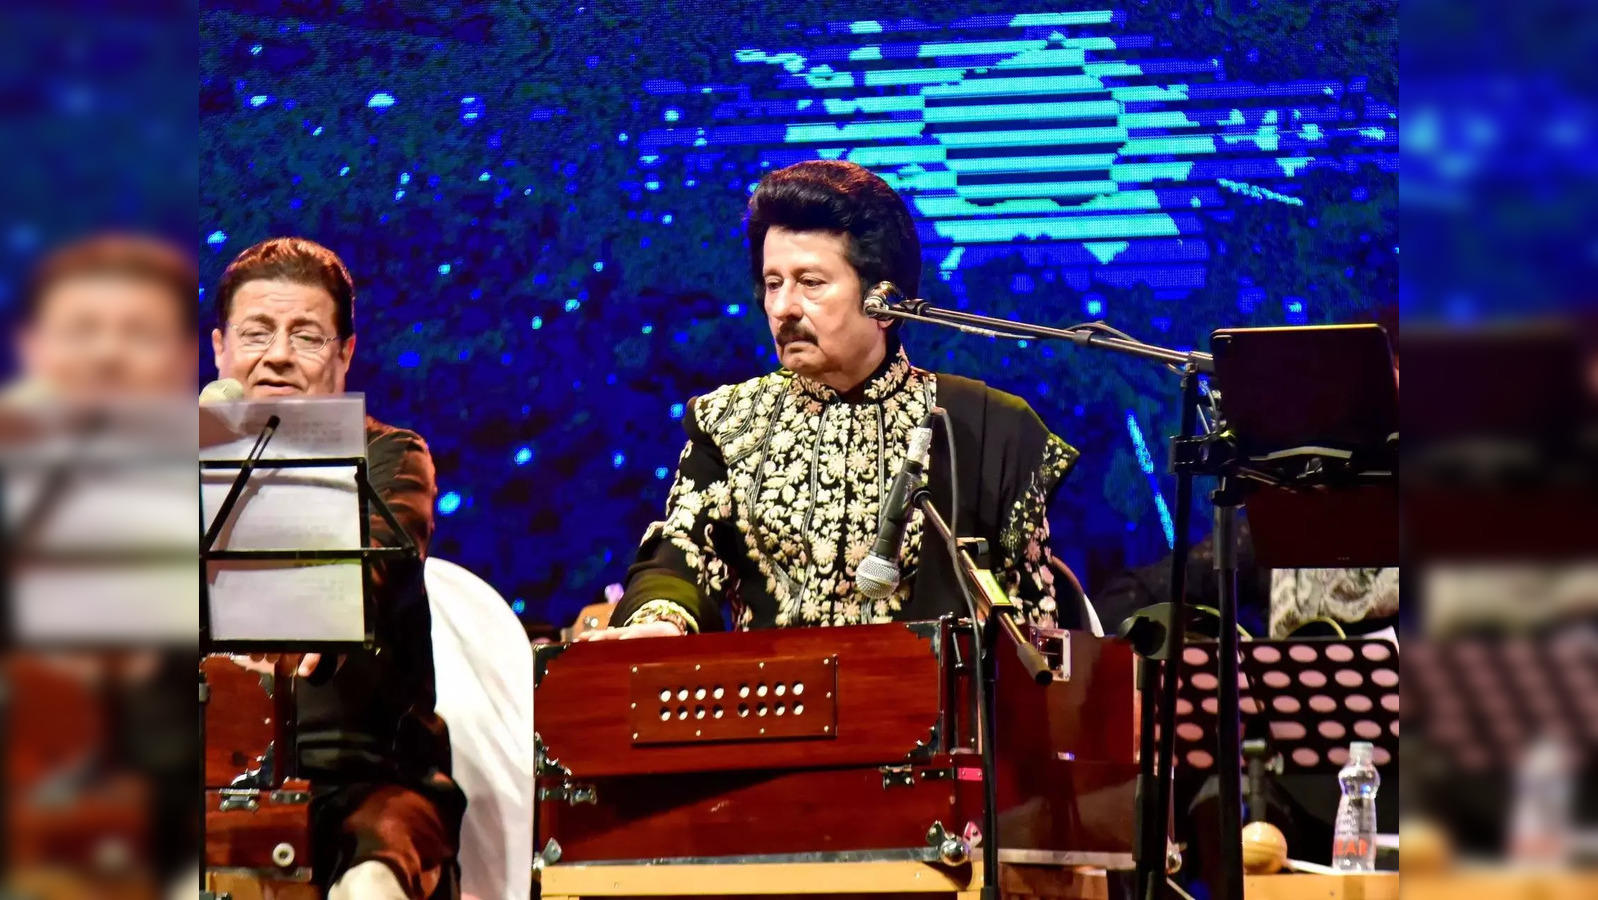 Pankaj Udhas death: Ghazal singer passes away at 72 after